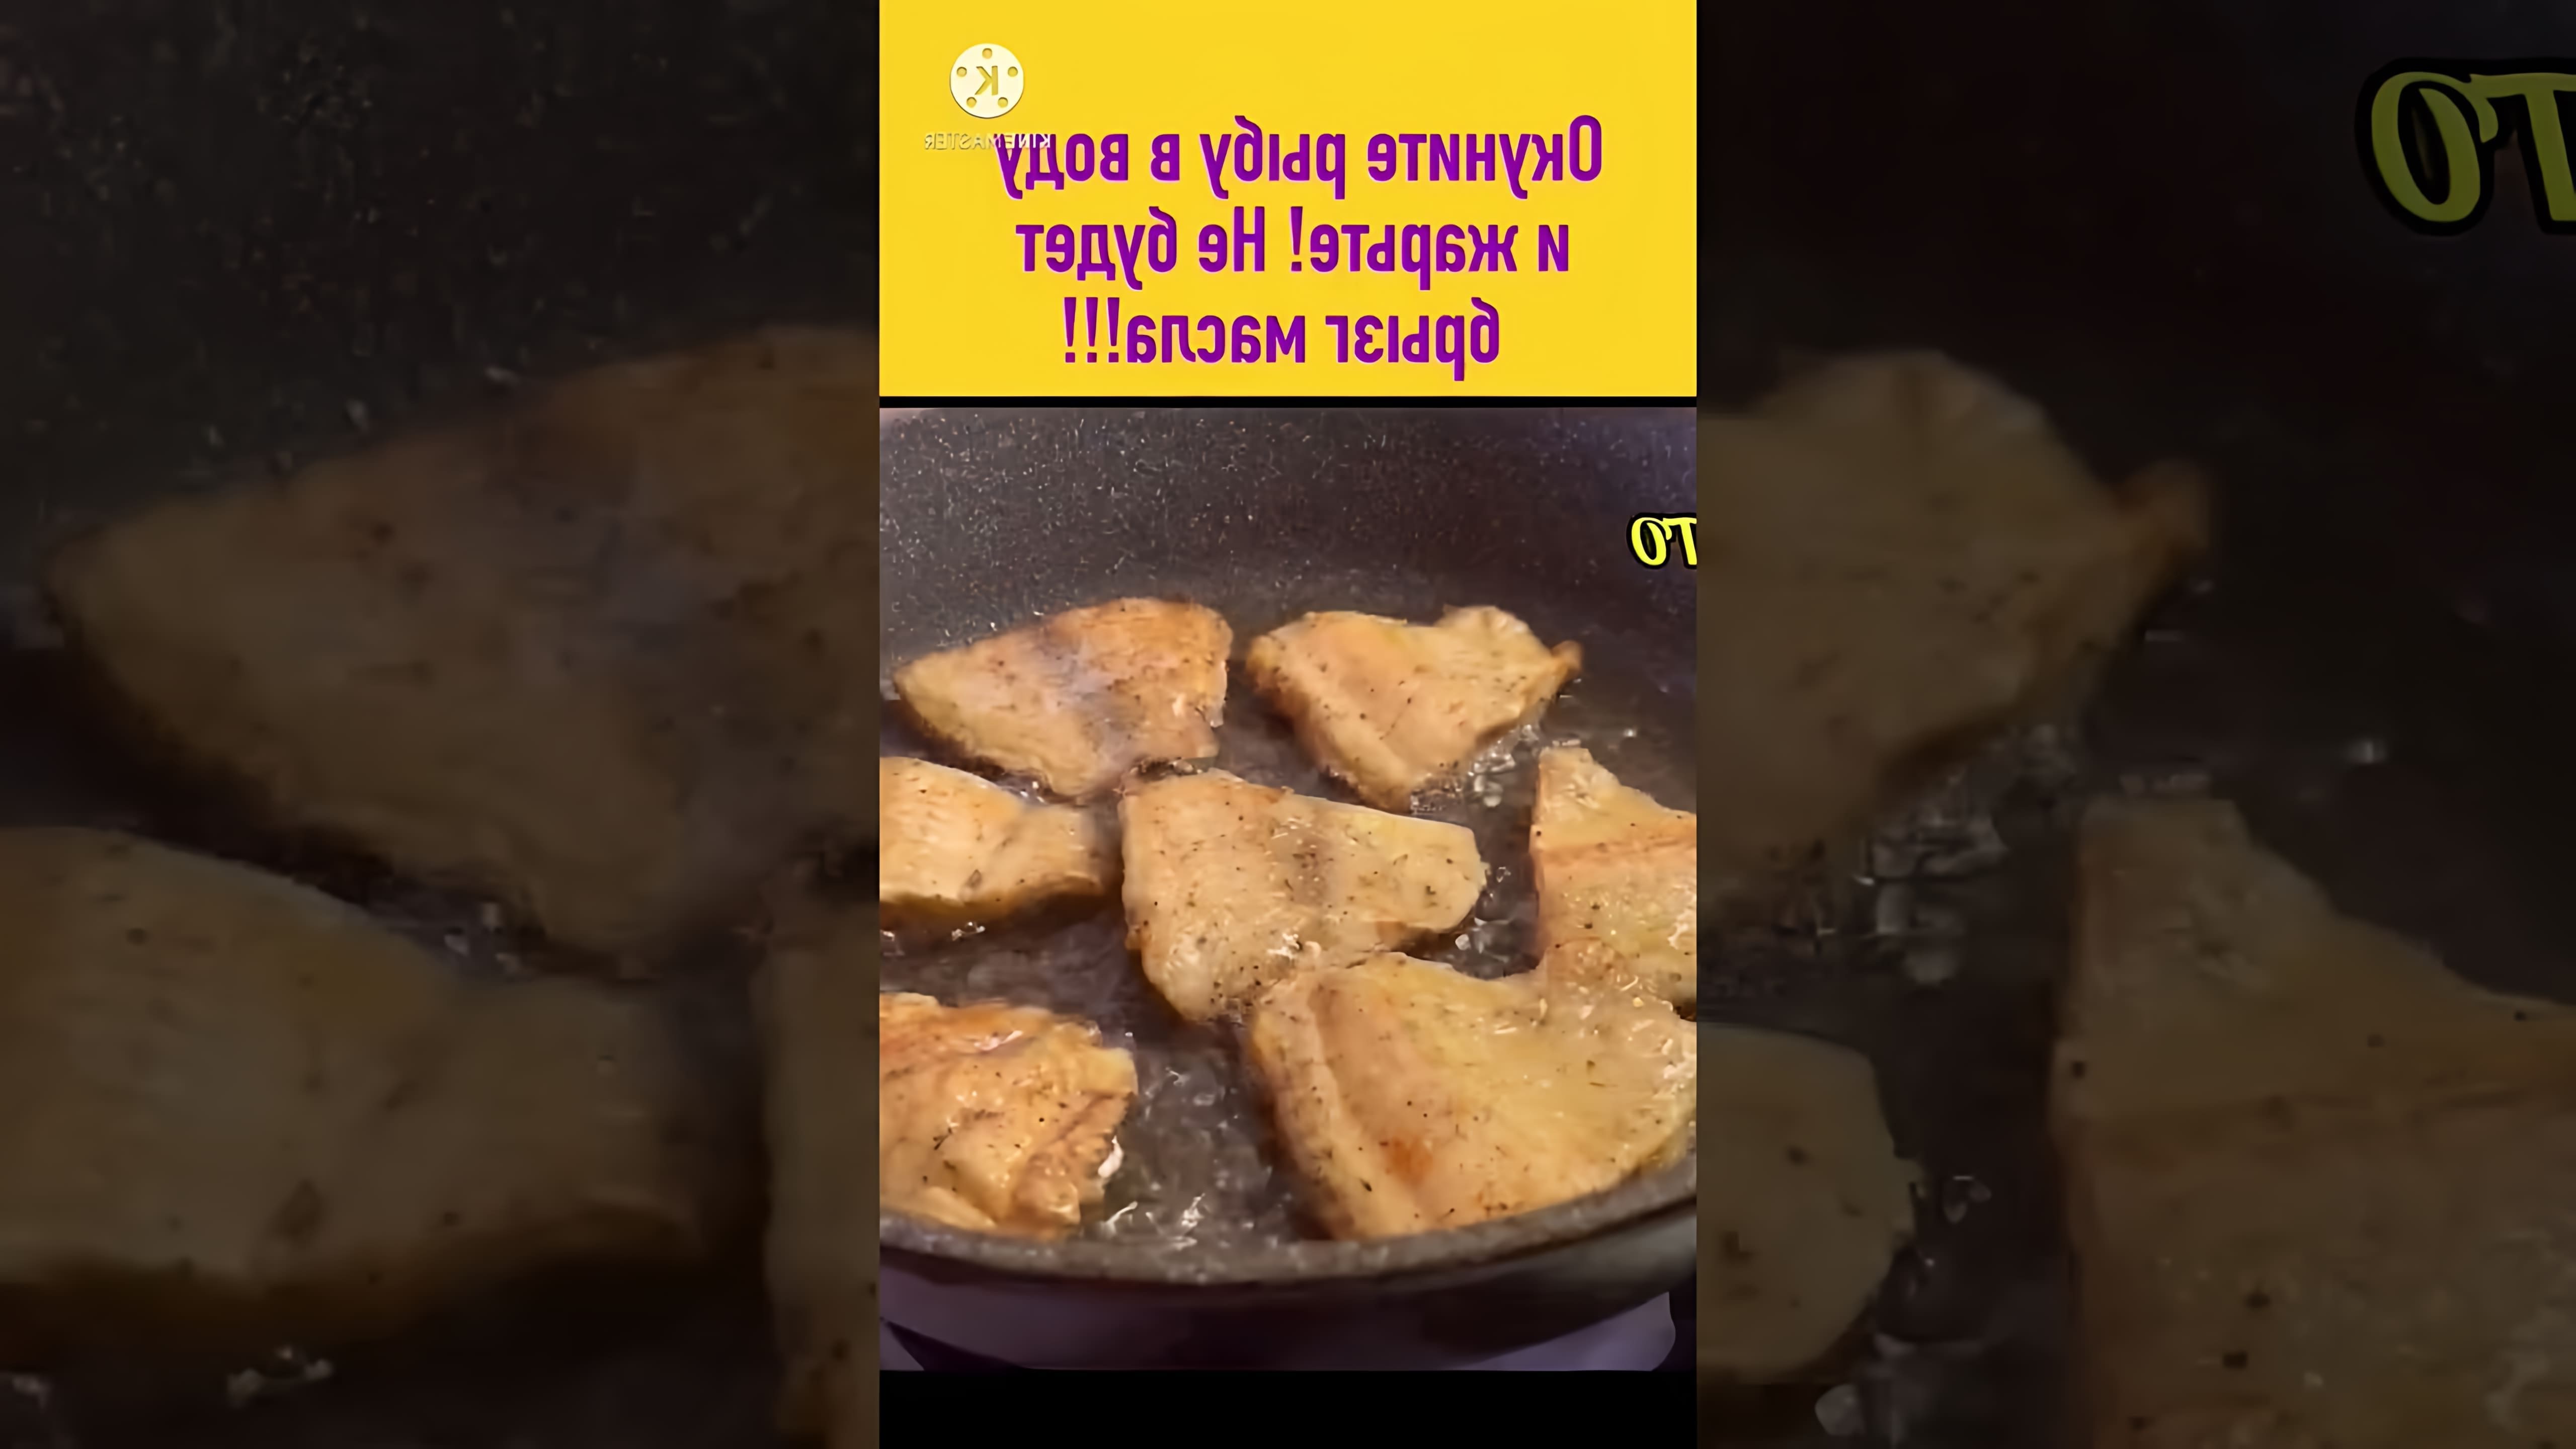 В этом видео демонстрируется простой и эффективный способ приготовления рыбы без брызг масла и пригоревшей муки